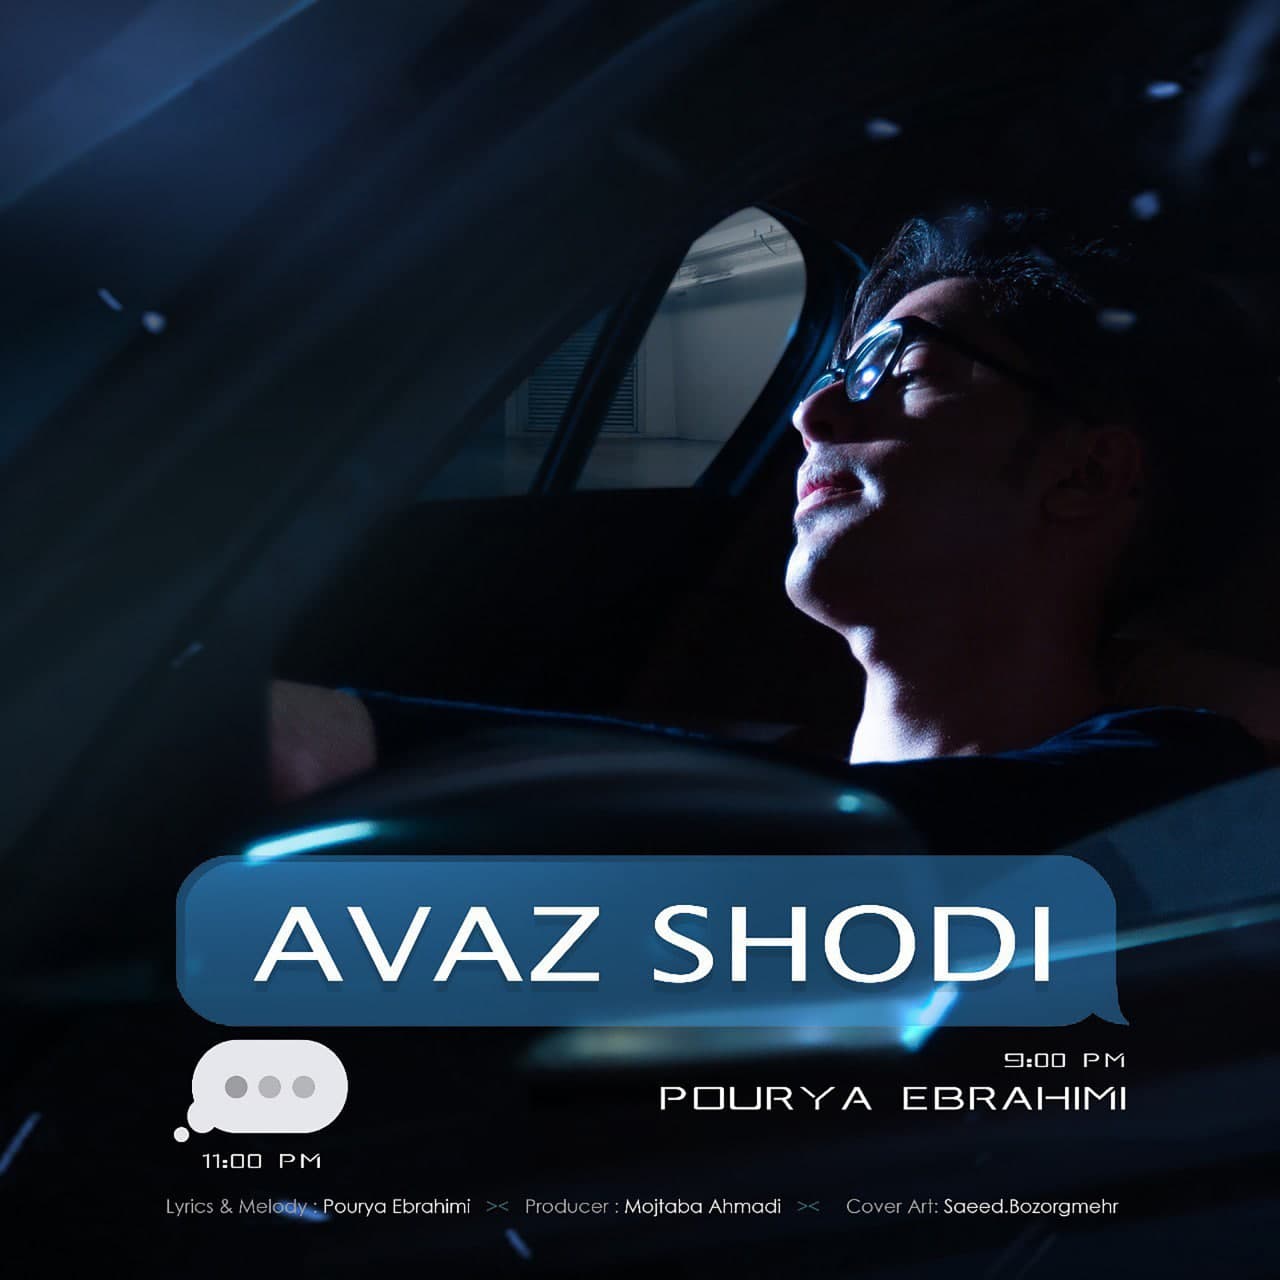  دانلود آهنگ جدید پوریا ابراهیمی - عوض شدی | Download New Music By Pourya Ebrahimi   - Avaz Shodi